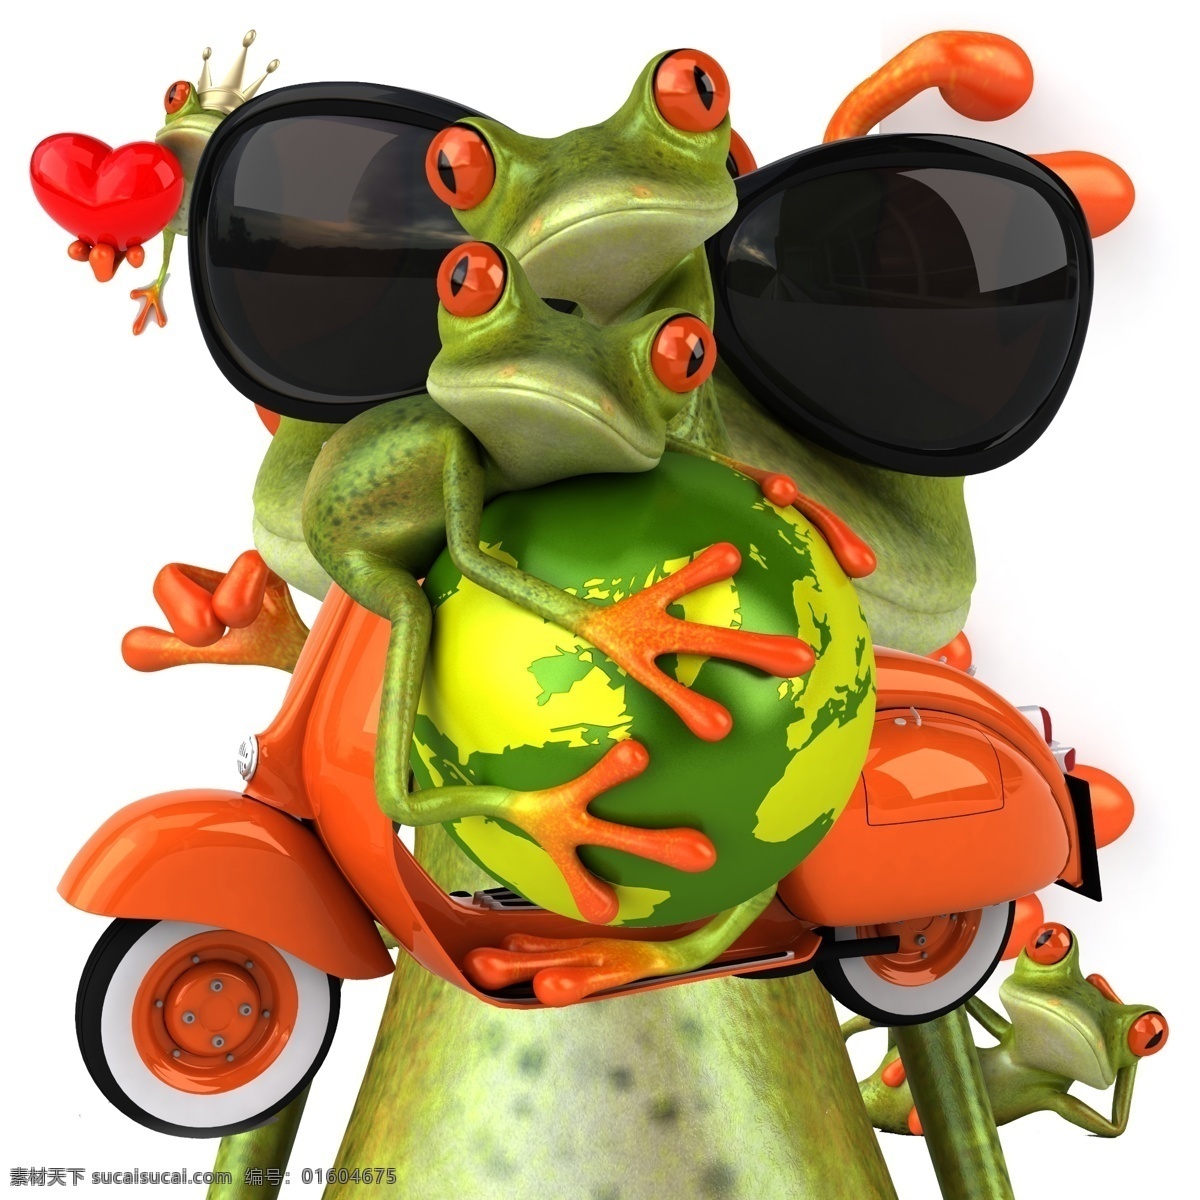 动漫 青蛙 图片集 动画 动画人物 动漫卡通 动漫人物 动漫素材 动漫图片 怪兽 怪物 可爱 青蛙图 可爱图片 怪蛙 psd源文件